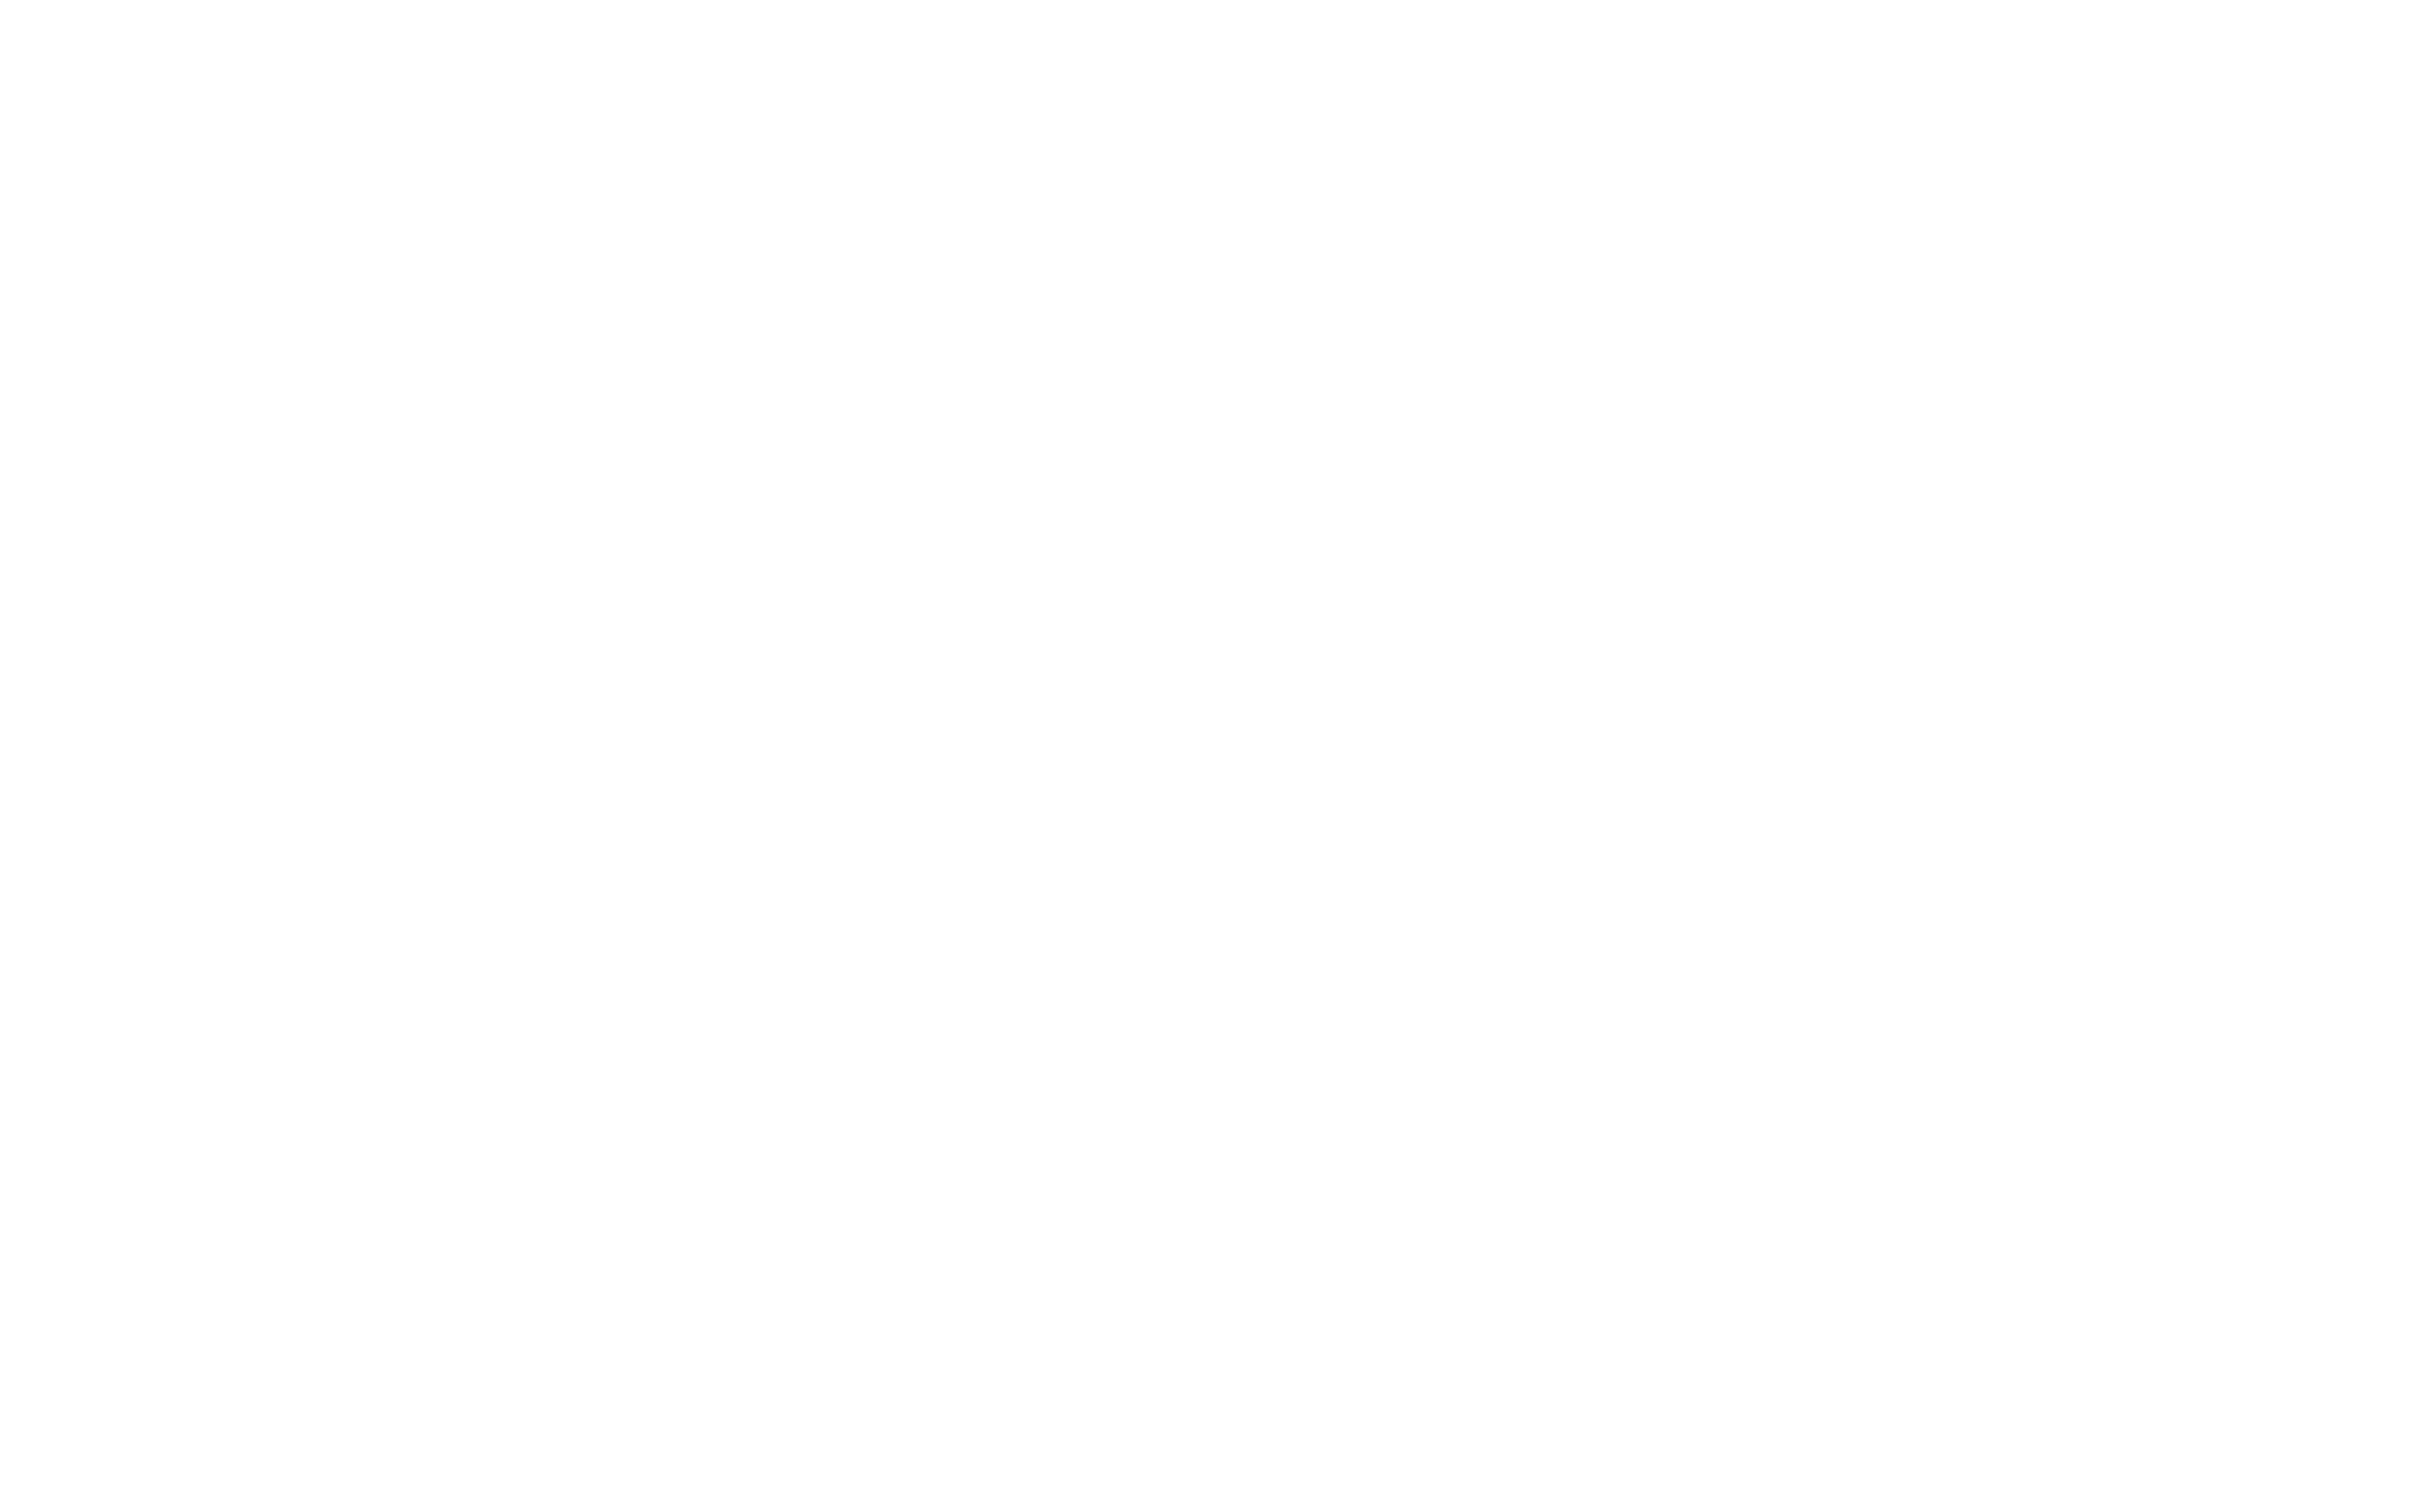 Arkatek Music Group